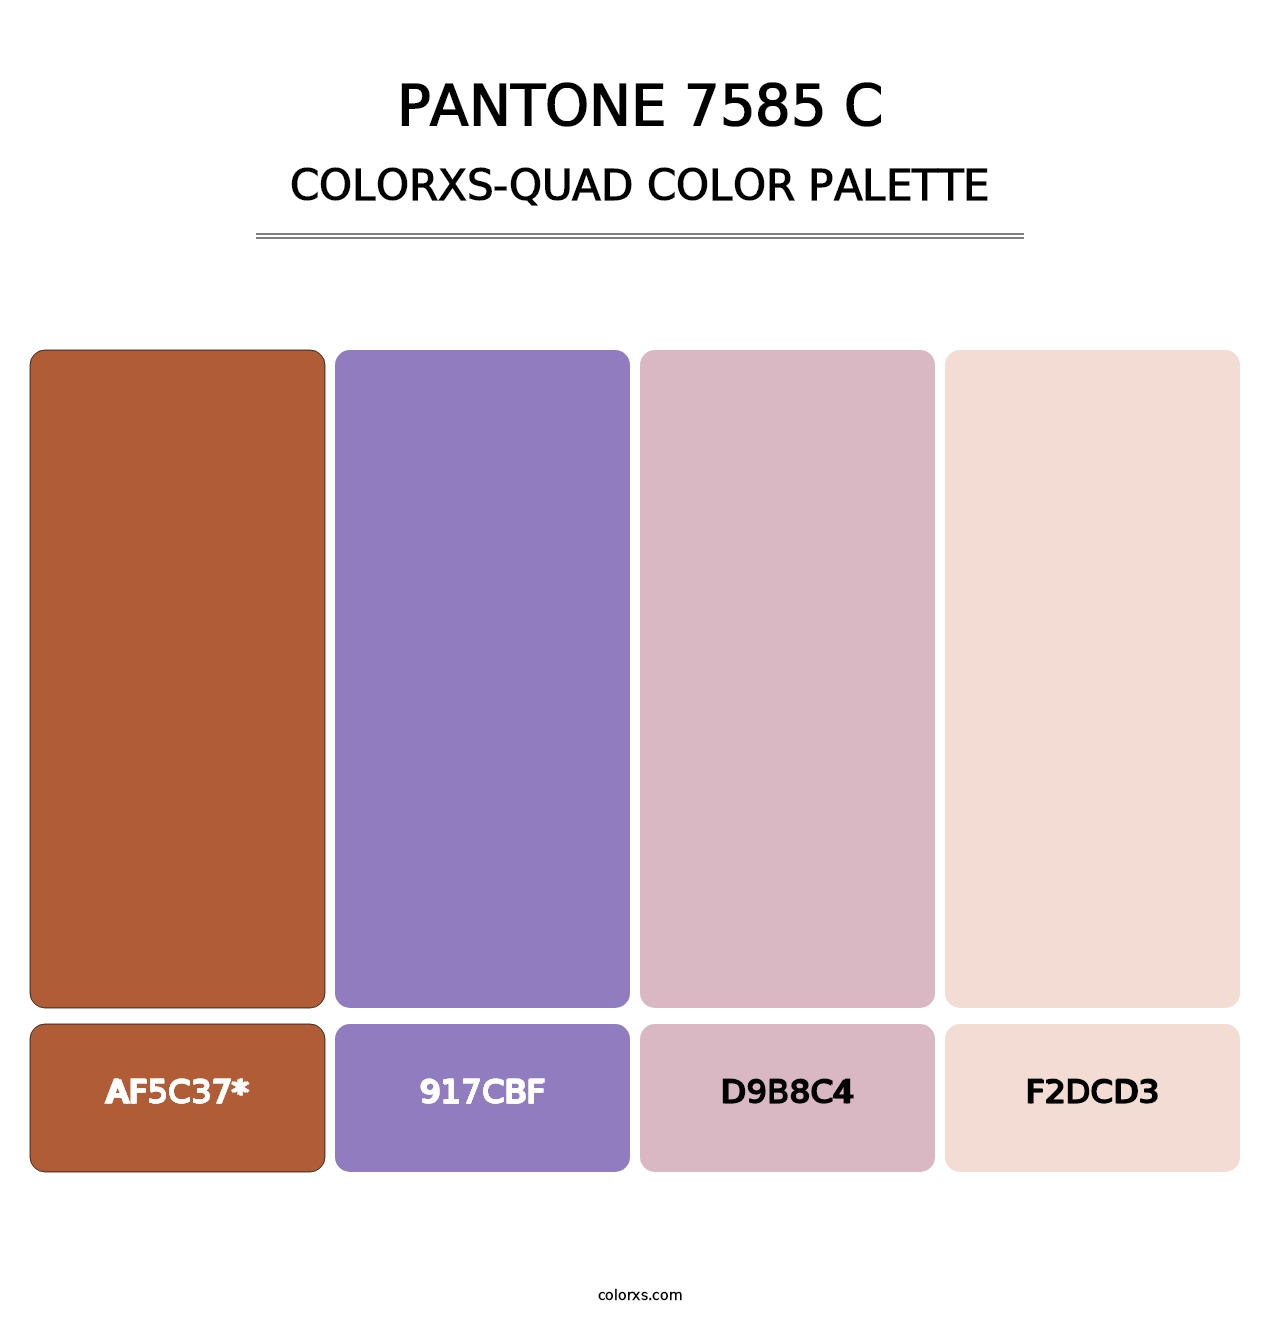 PANTONE 7585 C - Colorxs Quad Palette